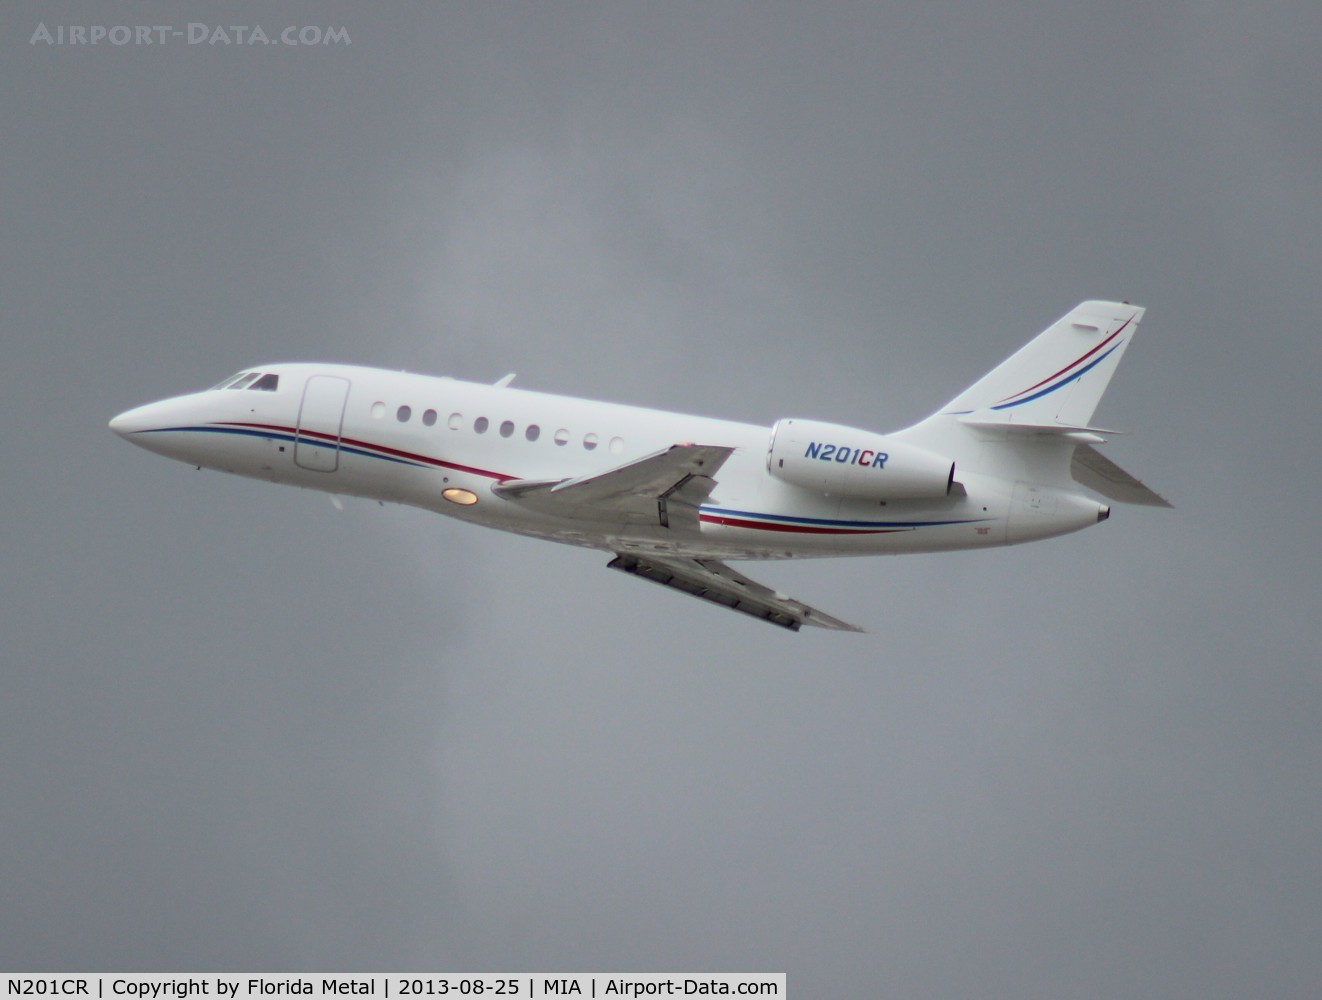 N201CR, 1995 Dassault Falcon 2000 C/N 002, Falcon 2000